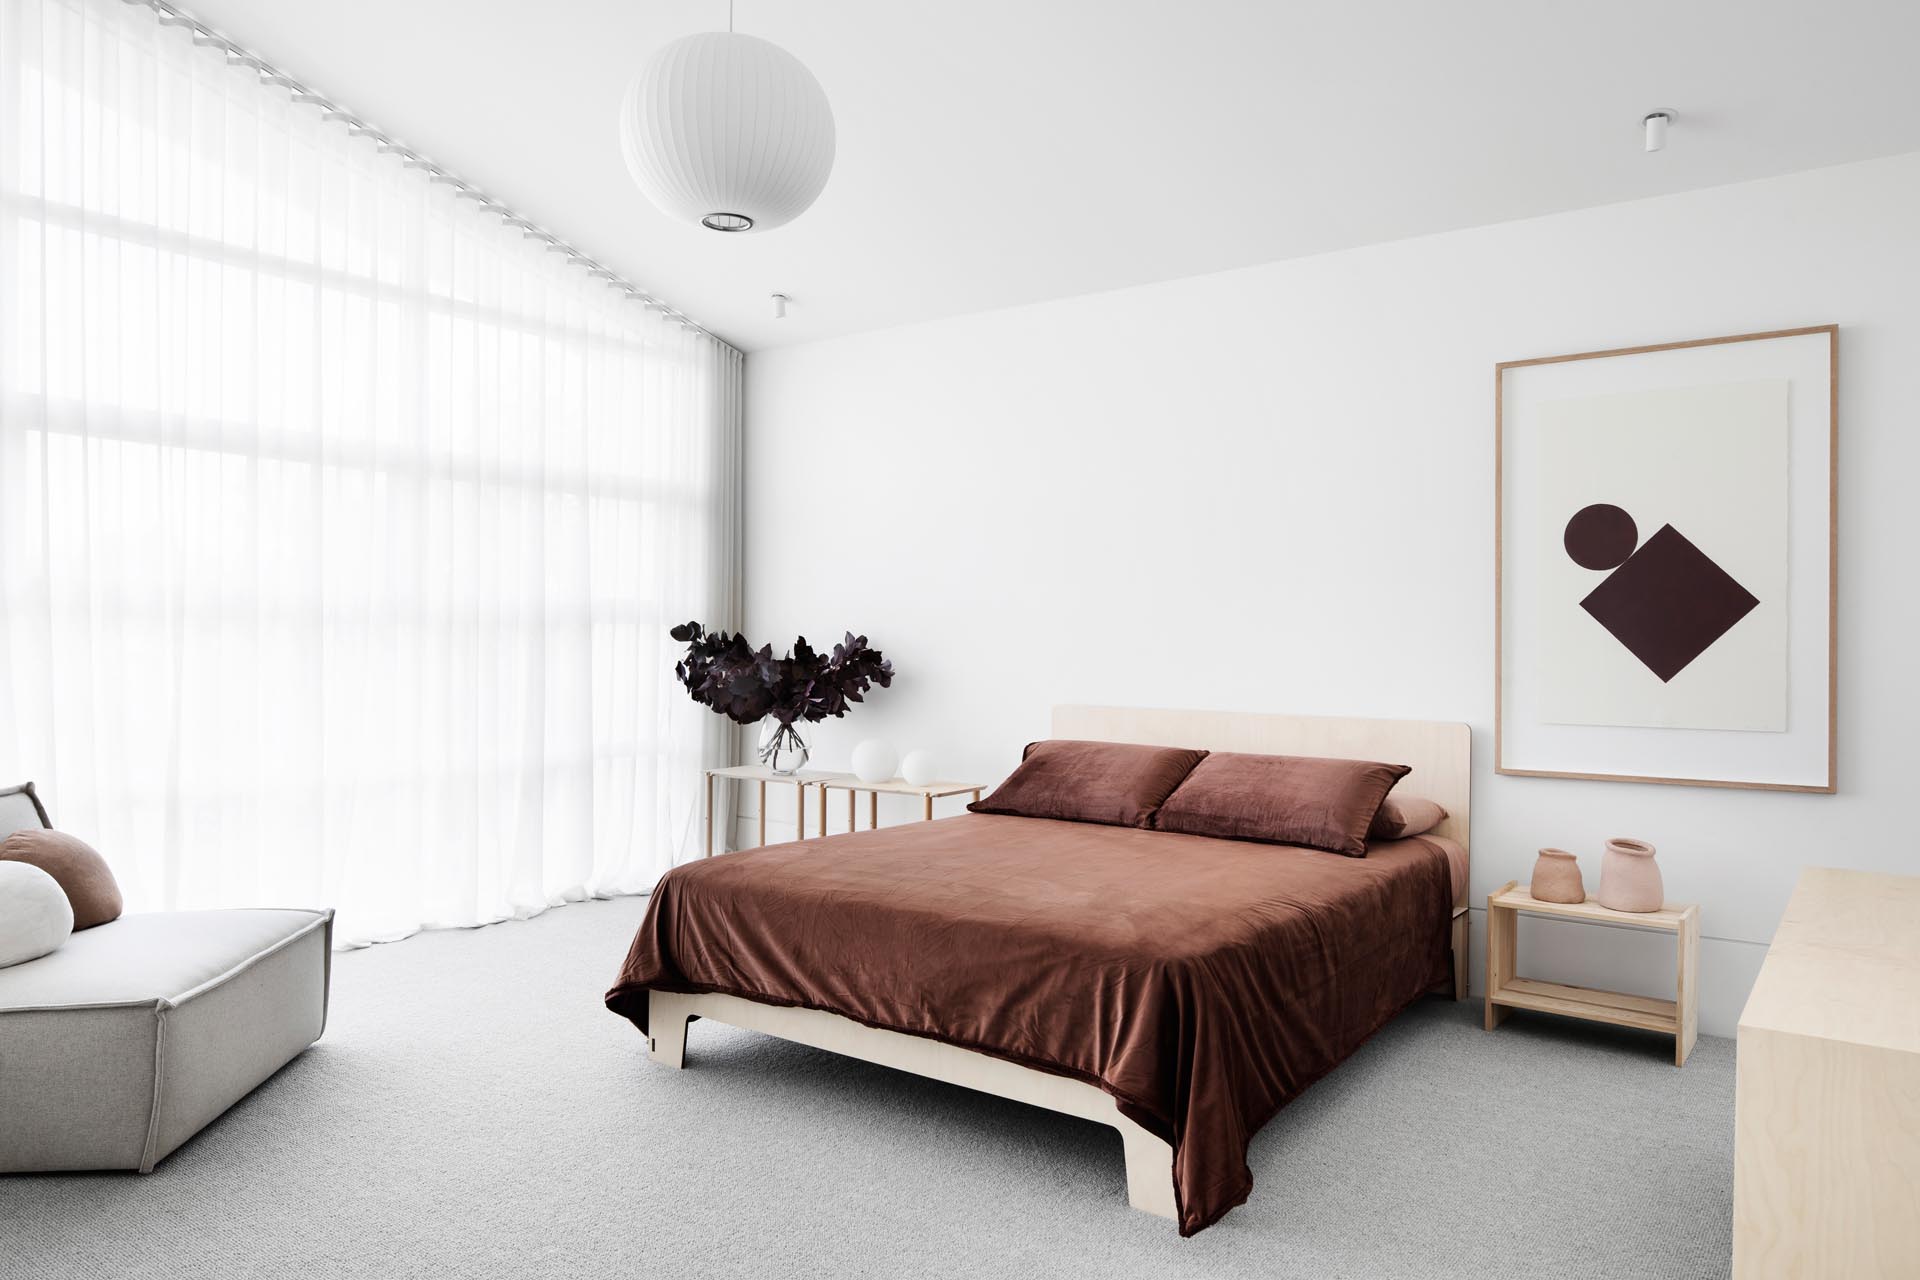 В этой главной спальне темно-коричневое постельное белье контрастирует с более светлыми элементами в комнате, такими как пол, прикроватные тумбочки и стул с обивкой.